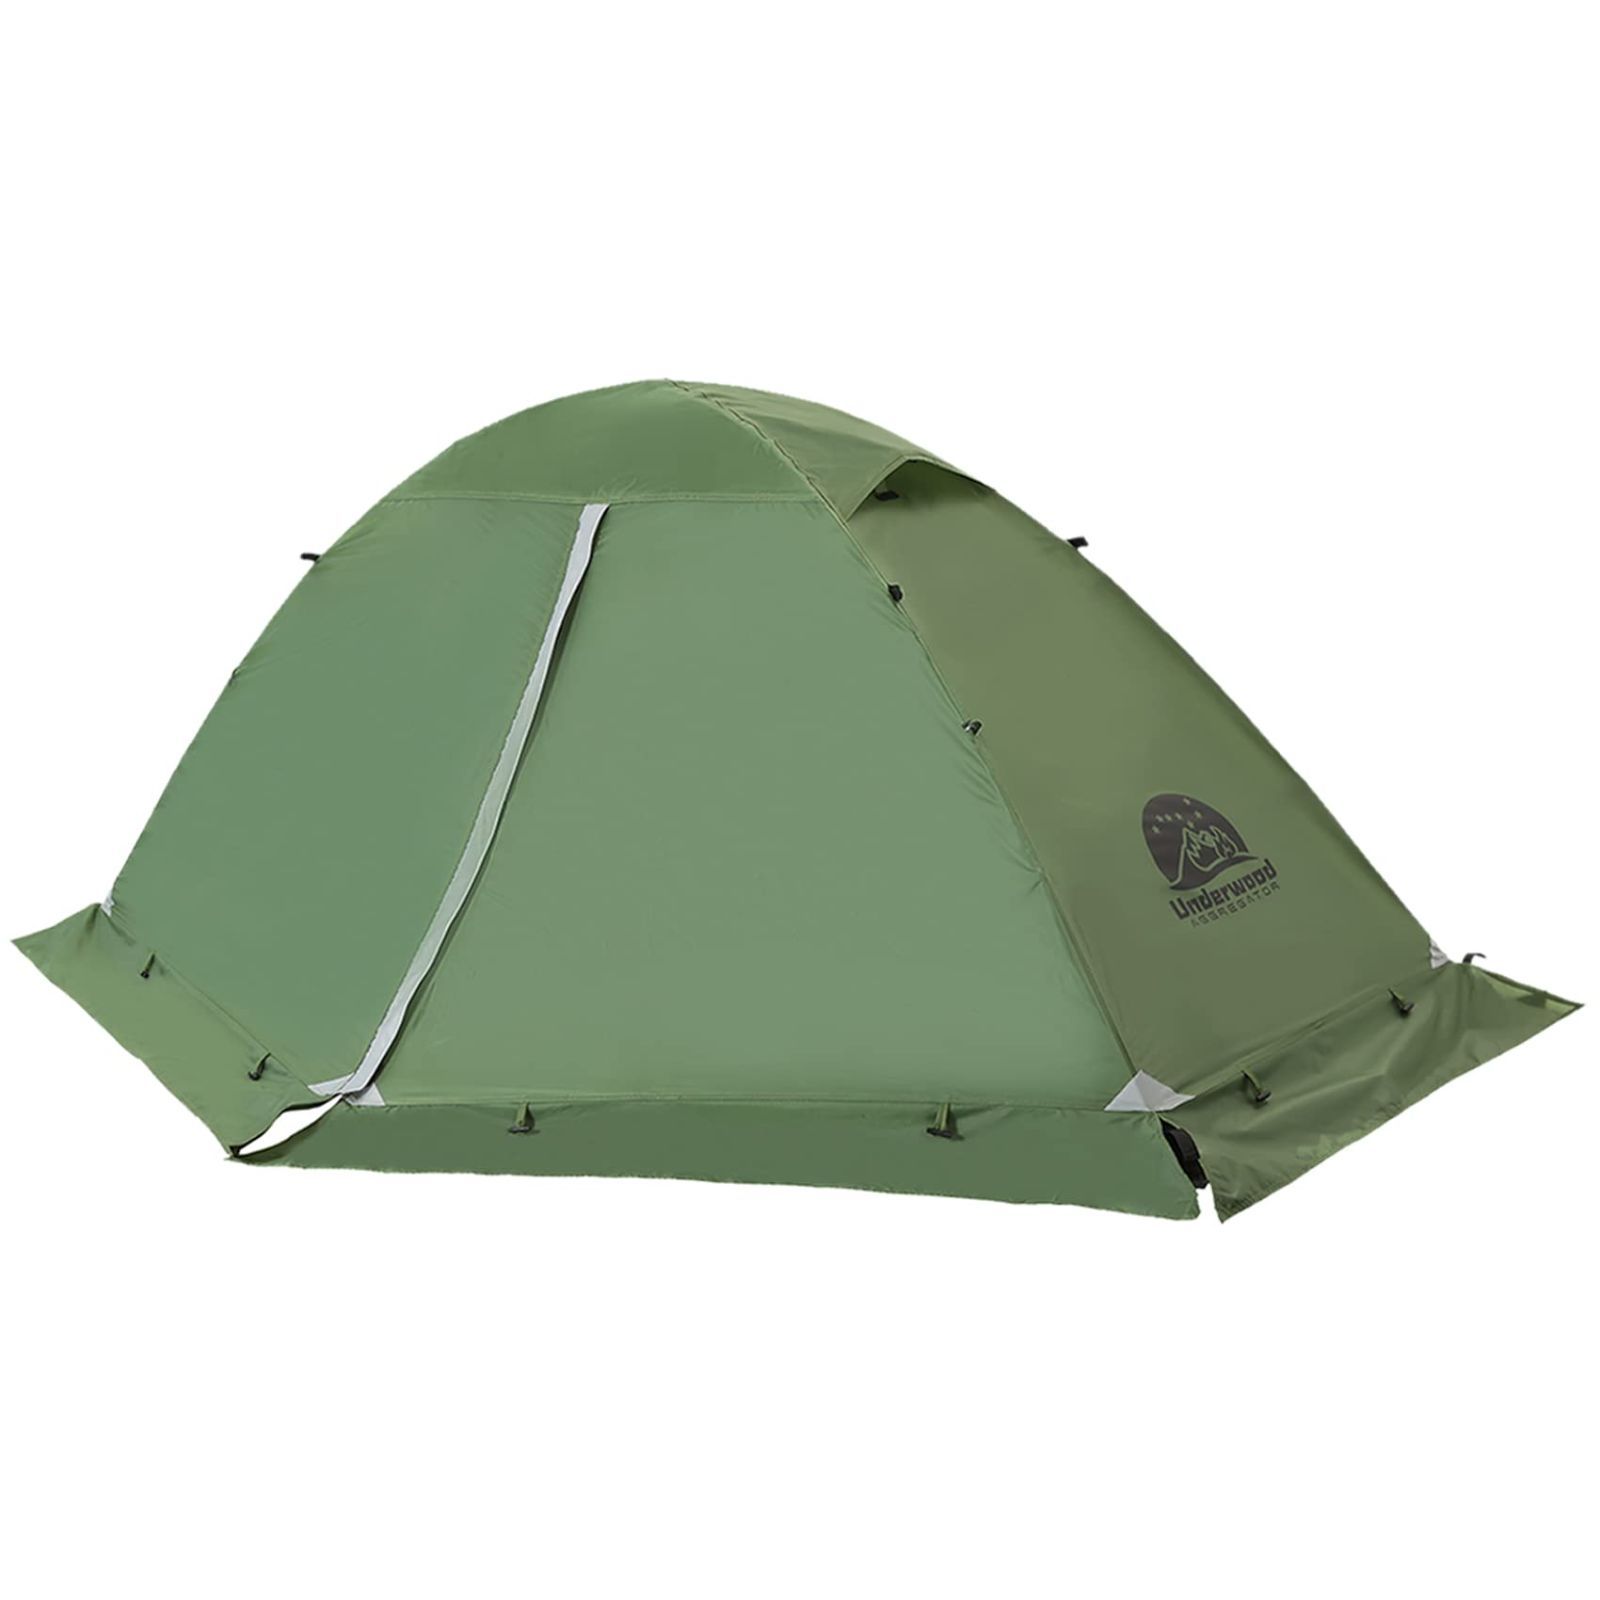 ソロキャンプ用テント 冬用テント スカート付 2人用テント 防水 新品・未使用品